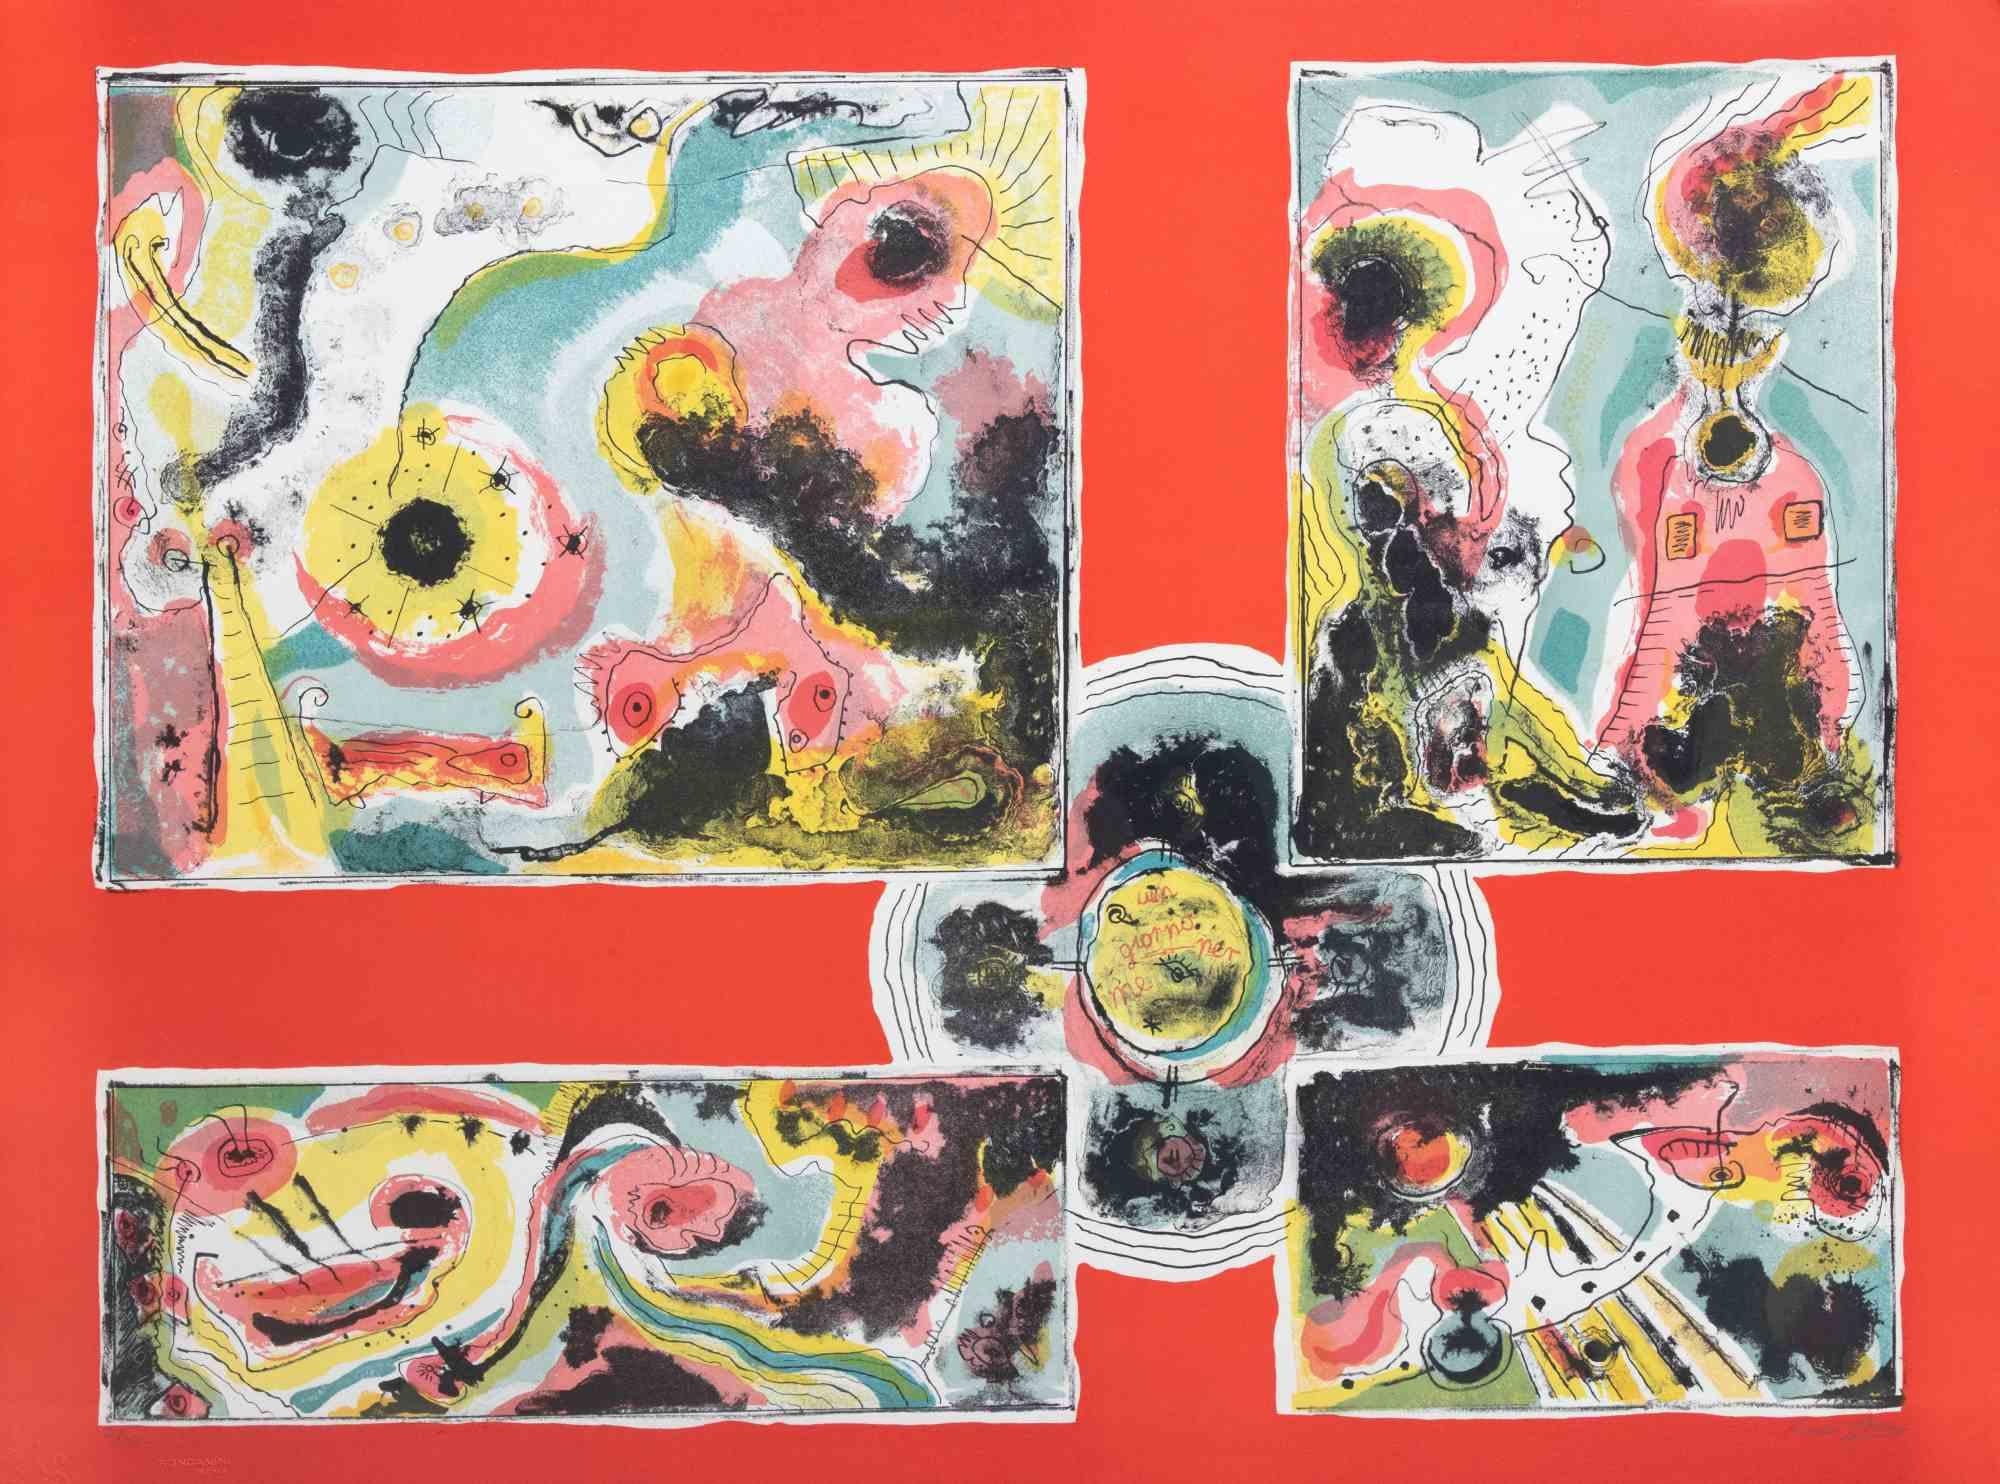 Red Abstract est une œuvre d'art contemporain réalisée par Le Oben dans les années 1970.

Lithographie en couleurs mélangées.

Signé à la main dans la marge inférieure.

Numéroté dans la marge inférieure.

Édition de 80/100. 

